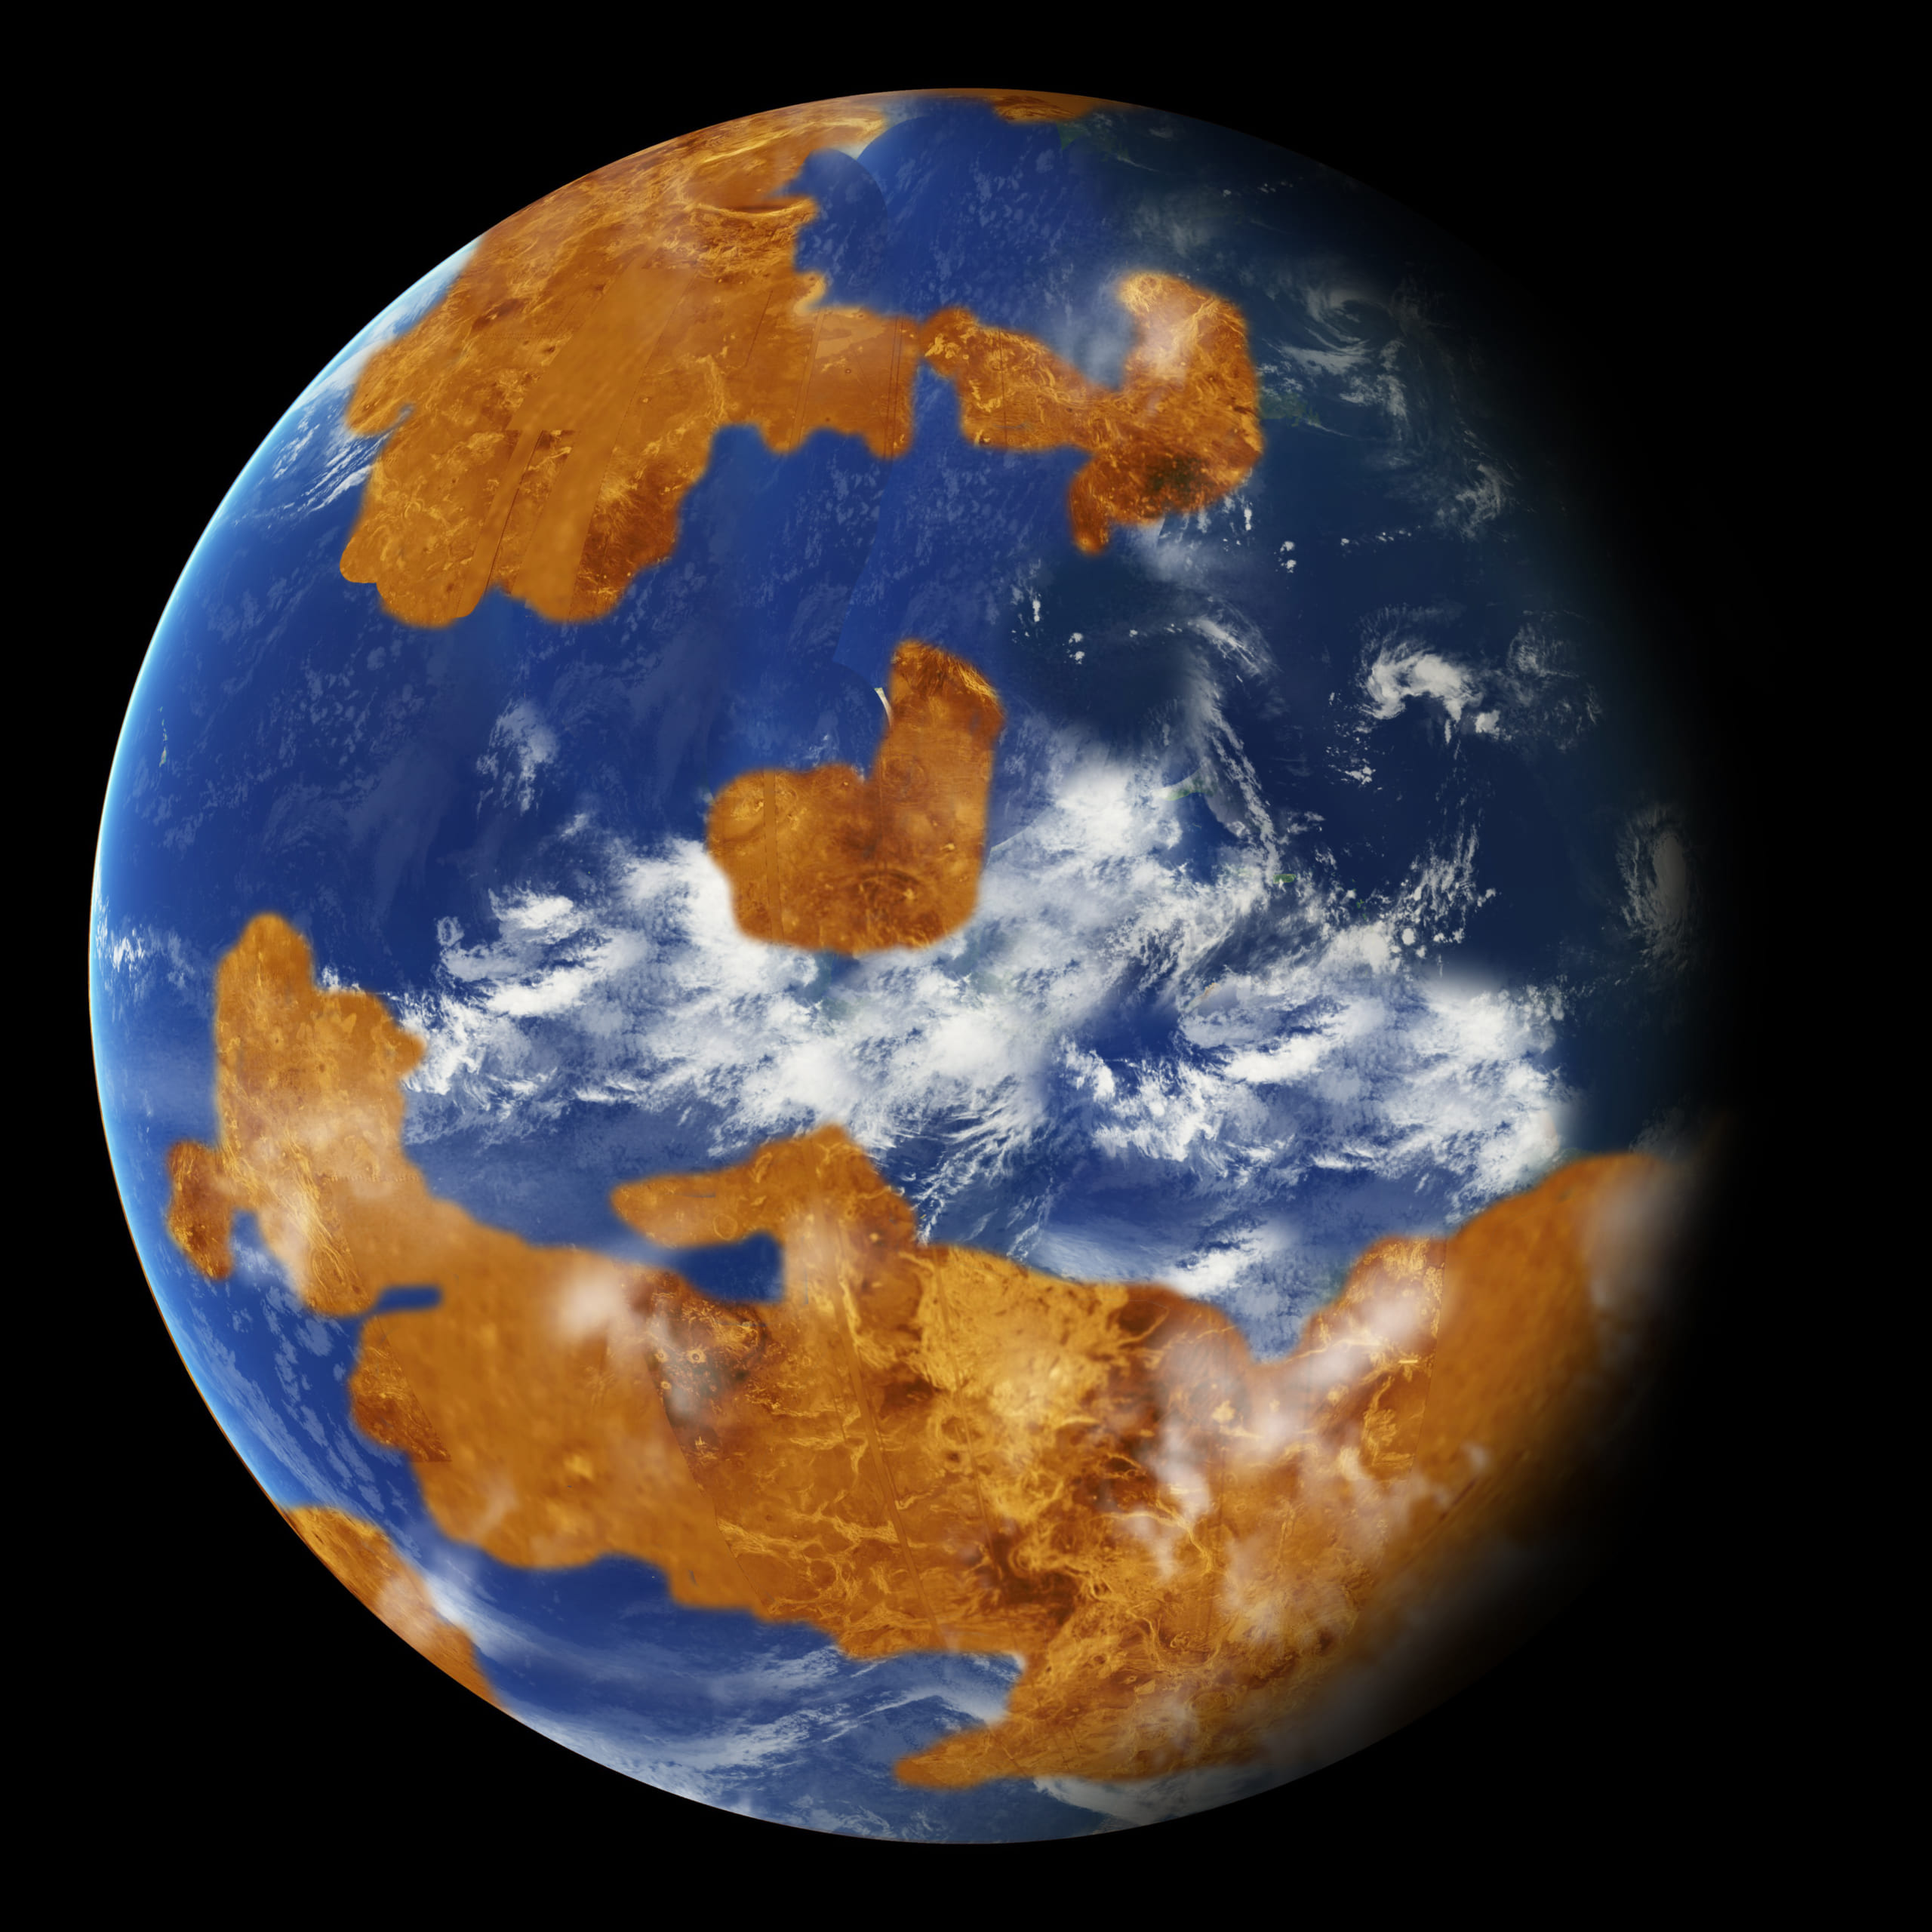 金星はかつて地球と変わらない惑星だった？　新事実がシミュレーションから明らかにの画像 1/4